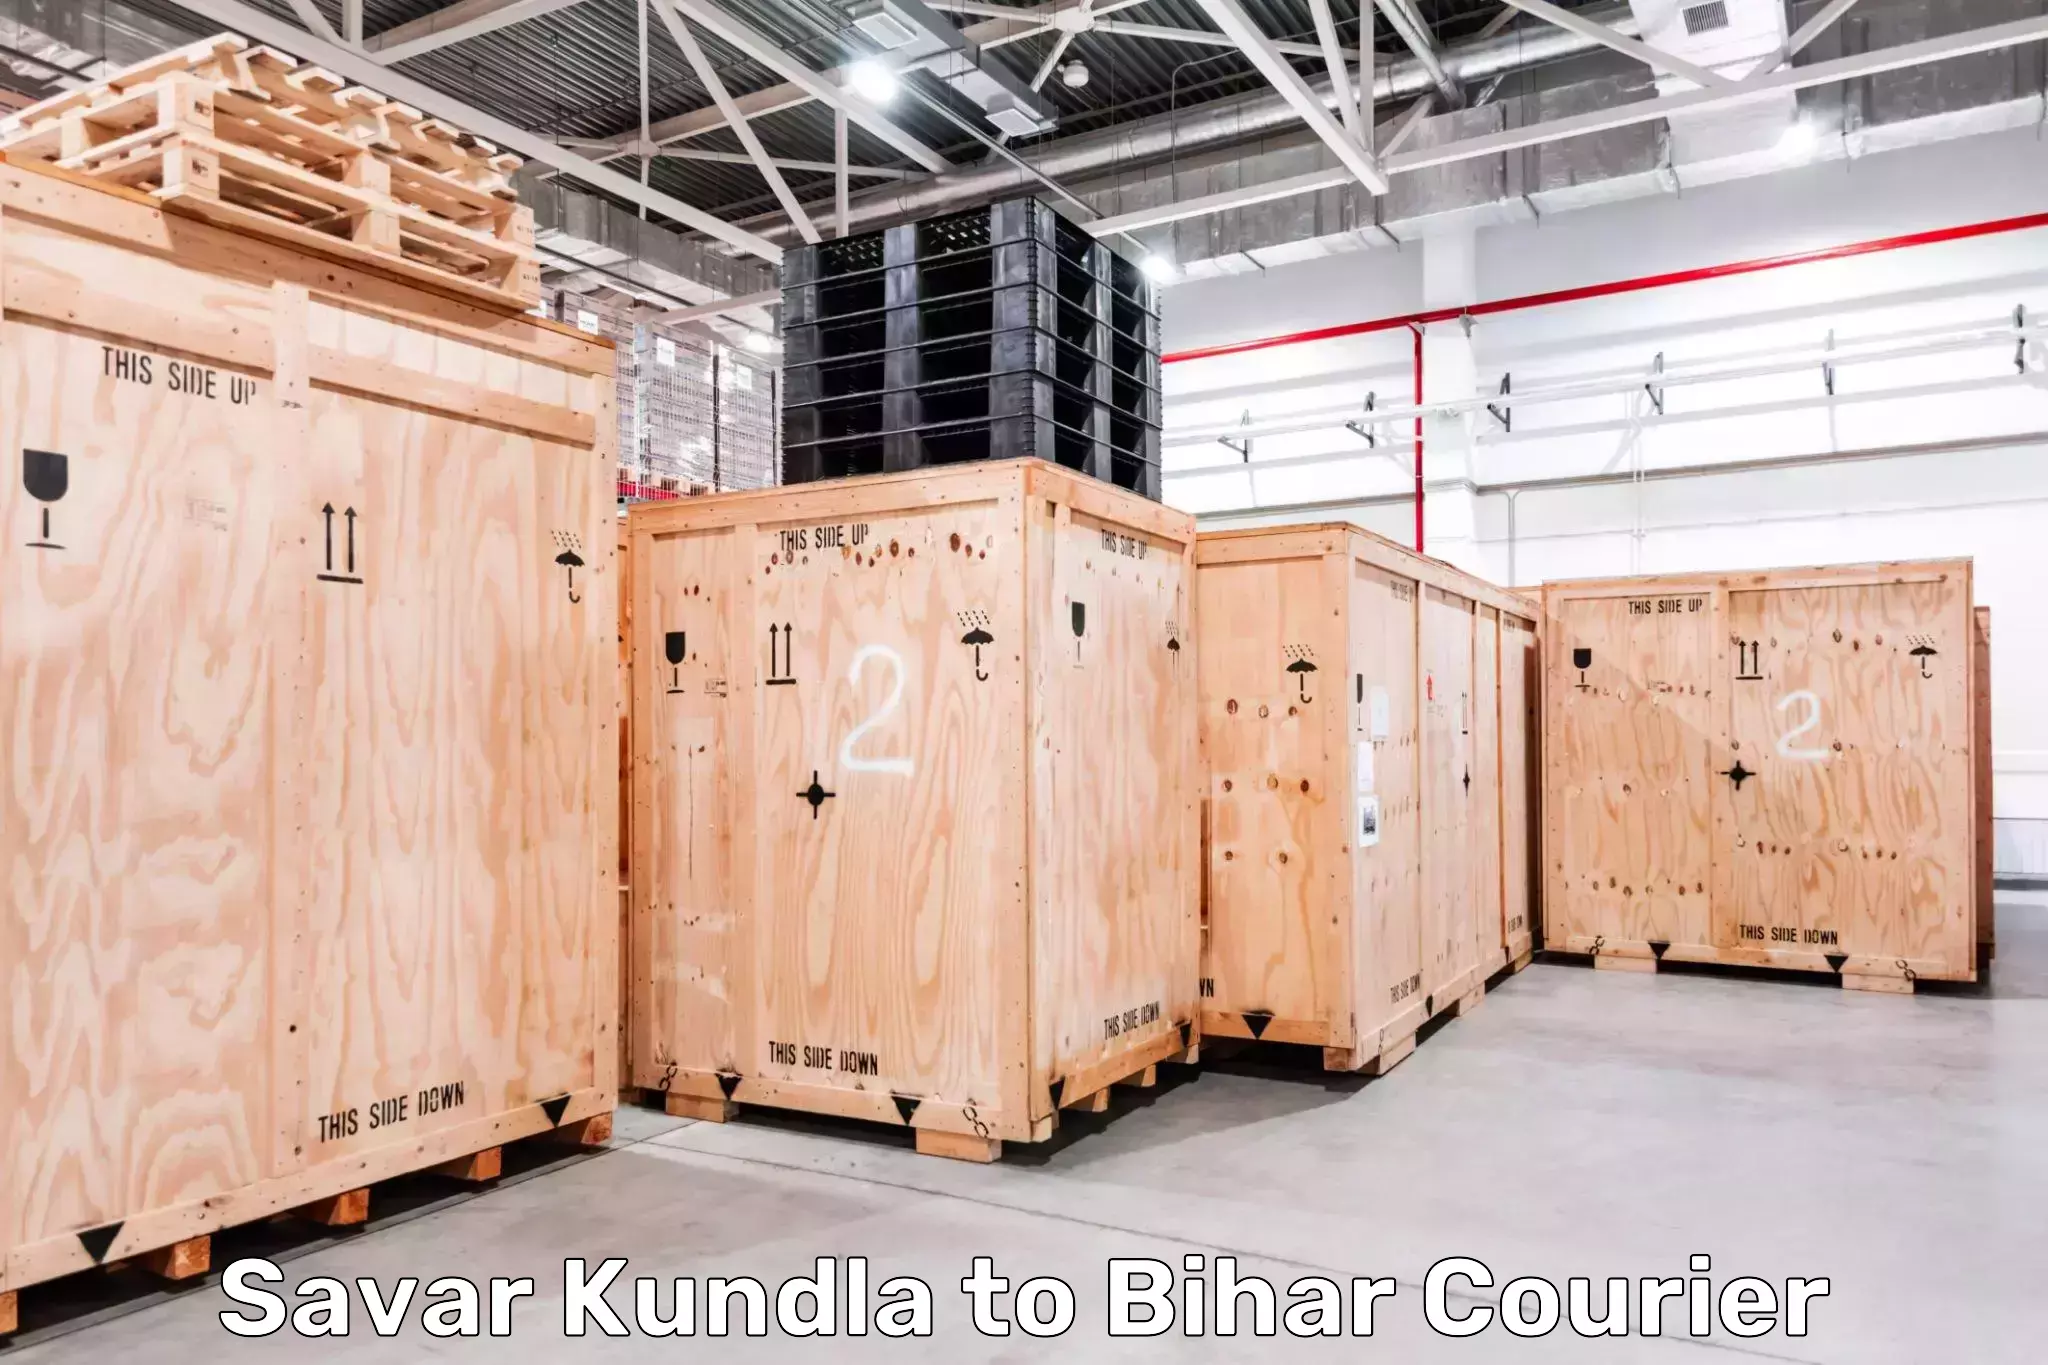 Global courier networks Savar Kundla to Benipur